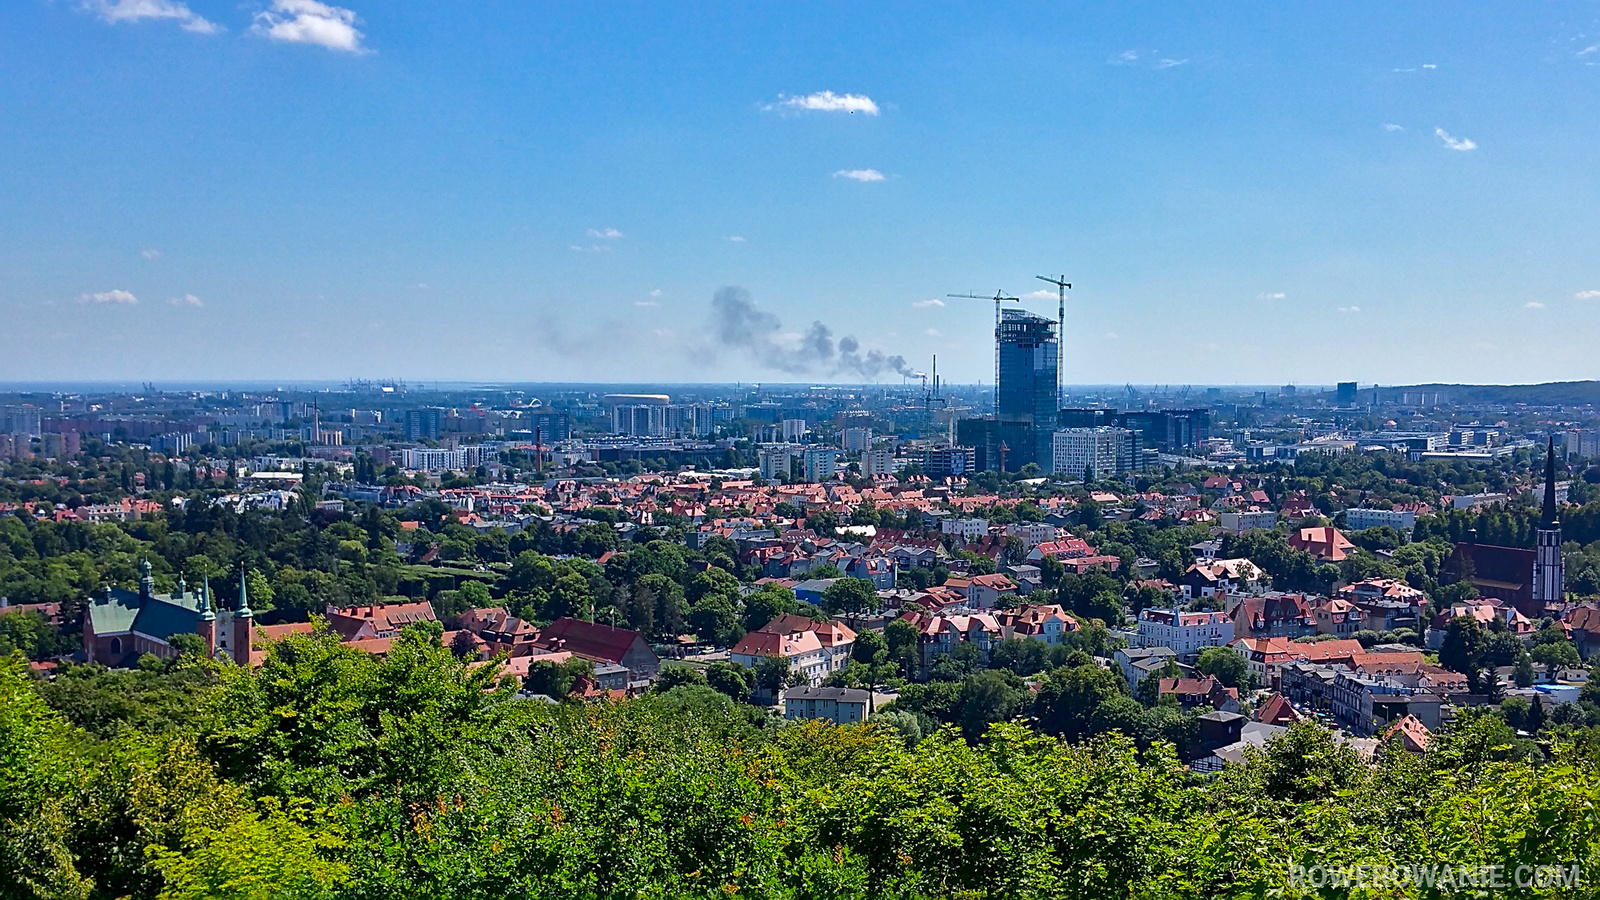 Widok ze szczytu metalowej wieży na Górze Pachołek. Widać Gdański i dym z fabryki.